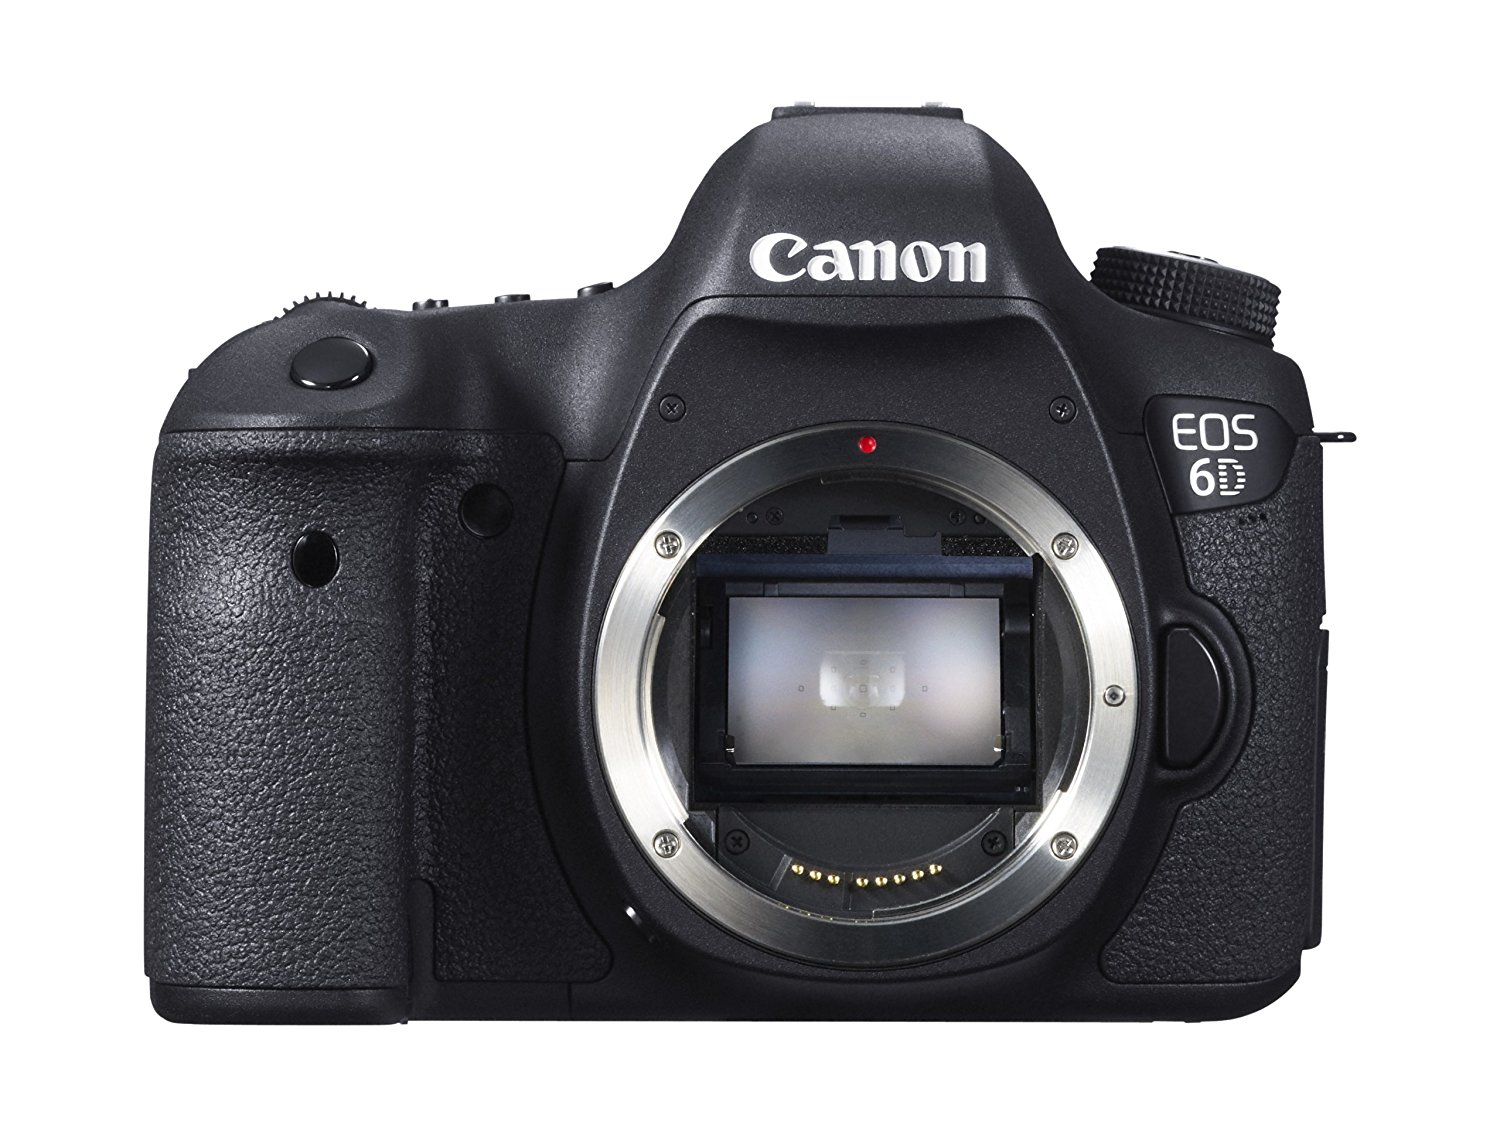  Canon ईओएस 6 डी 20.2 एमपी CMOS डिजिटल एसएलआर कैमरा 3.0-इंच एलसीडी (बॉडी ओनली) के साथ - वाई-फाई...